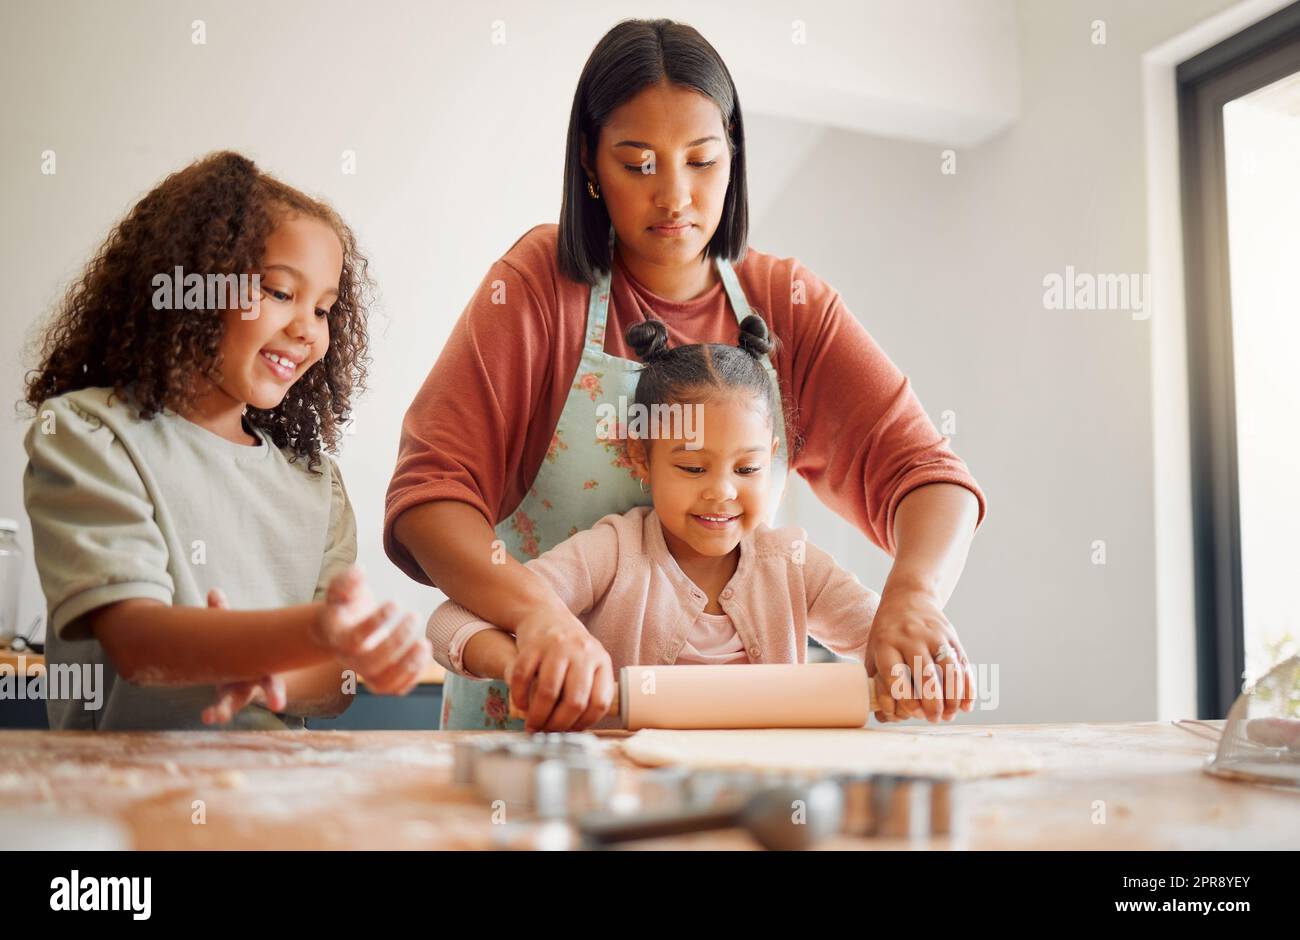 Nur Frauen, glückliche Mischrasse, dreiköpfige Familie, die in einer chaotischen Küche kocht. Liebe schwarze alleinerziehende Eltern, die sich mit ihren Töchtern verbinden und ihnen häusliche Fähigkeiten zu Hause beibringen Stockfoto